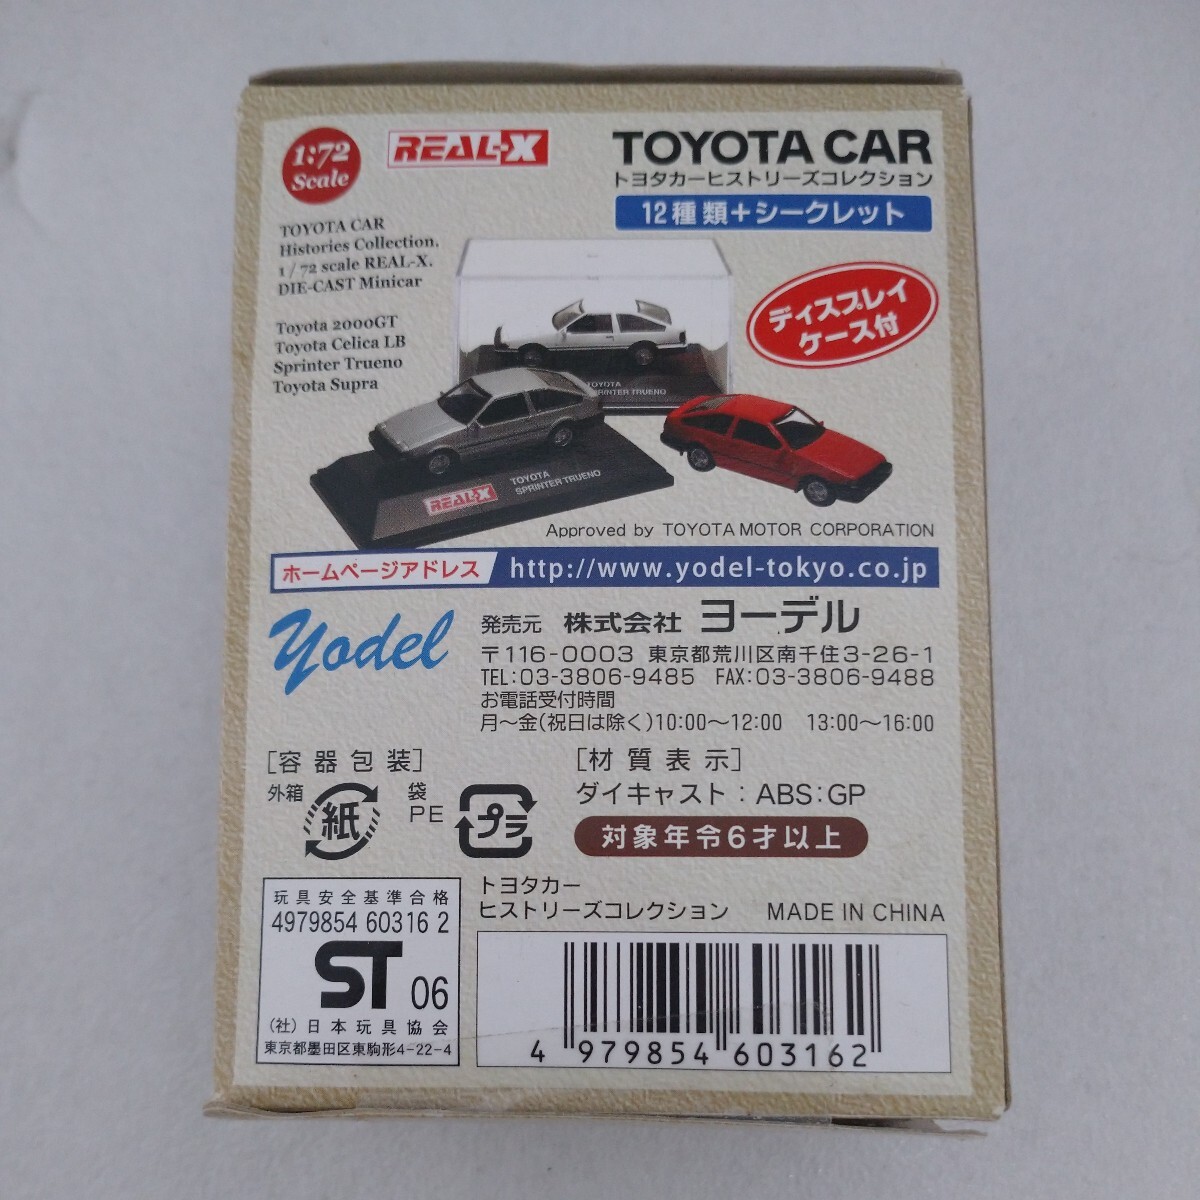 [ нераспечатанный ] Toyota машина hi -тактный Lee z коллекция REAL-X 1/72 миникар модель 